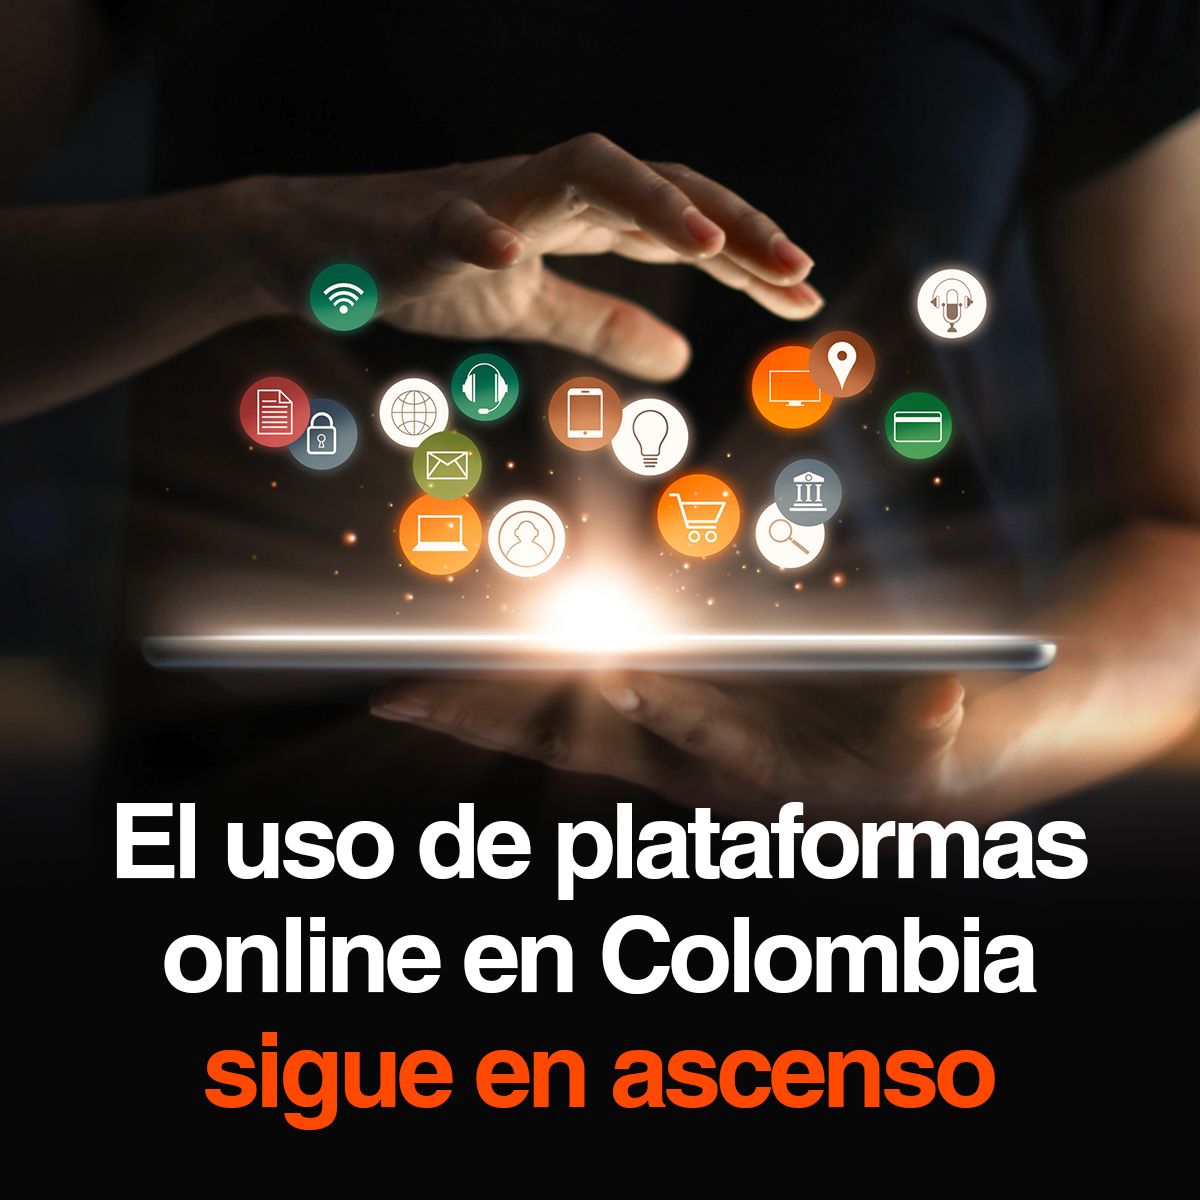 El uso de plataformas online en Colombia sigue en ascenso